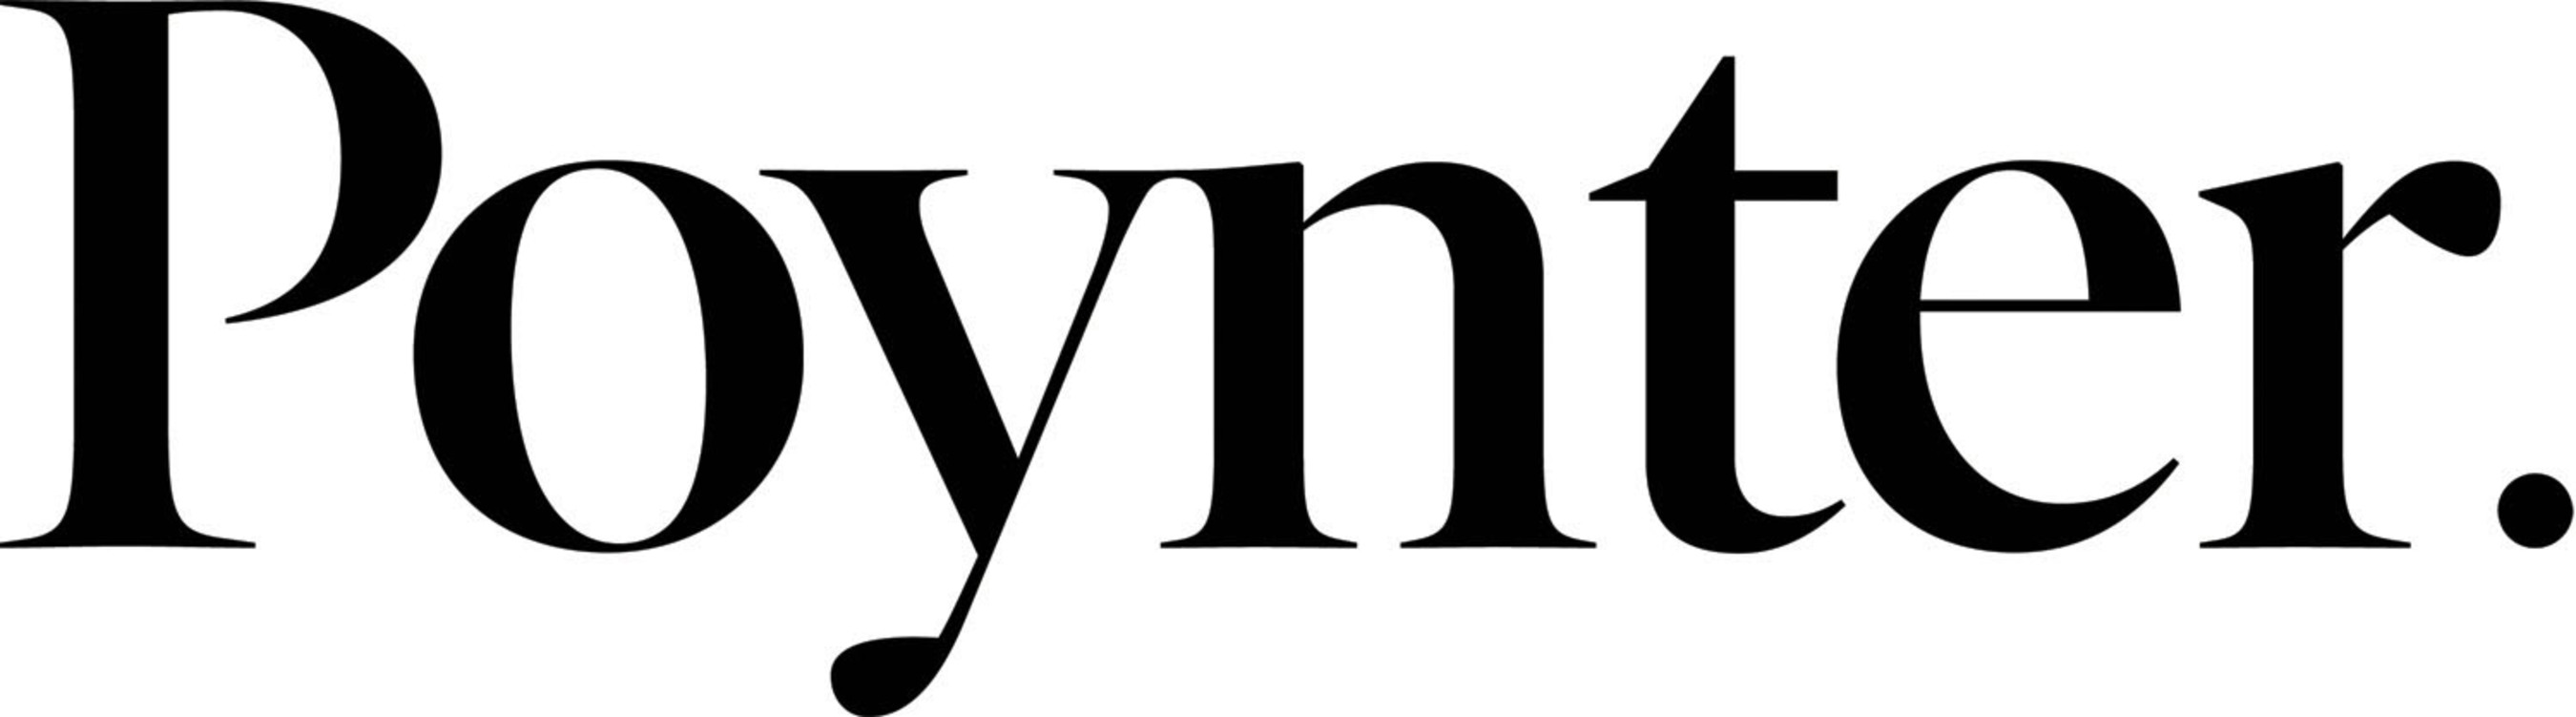 The Poynter Institute Logo.